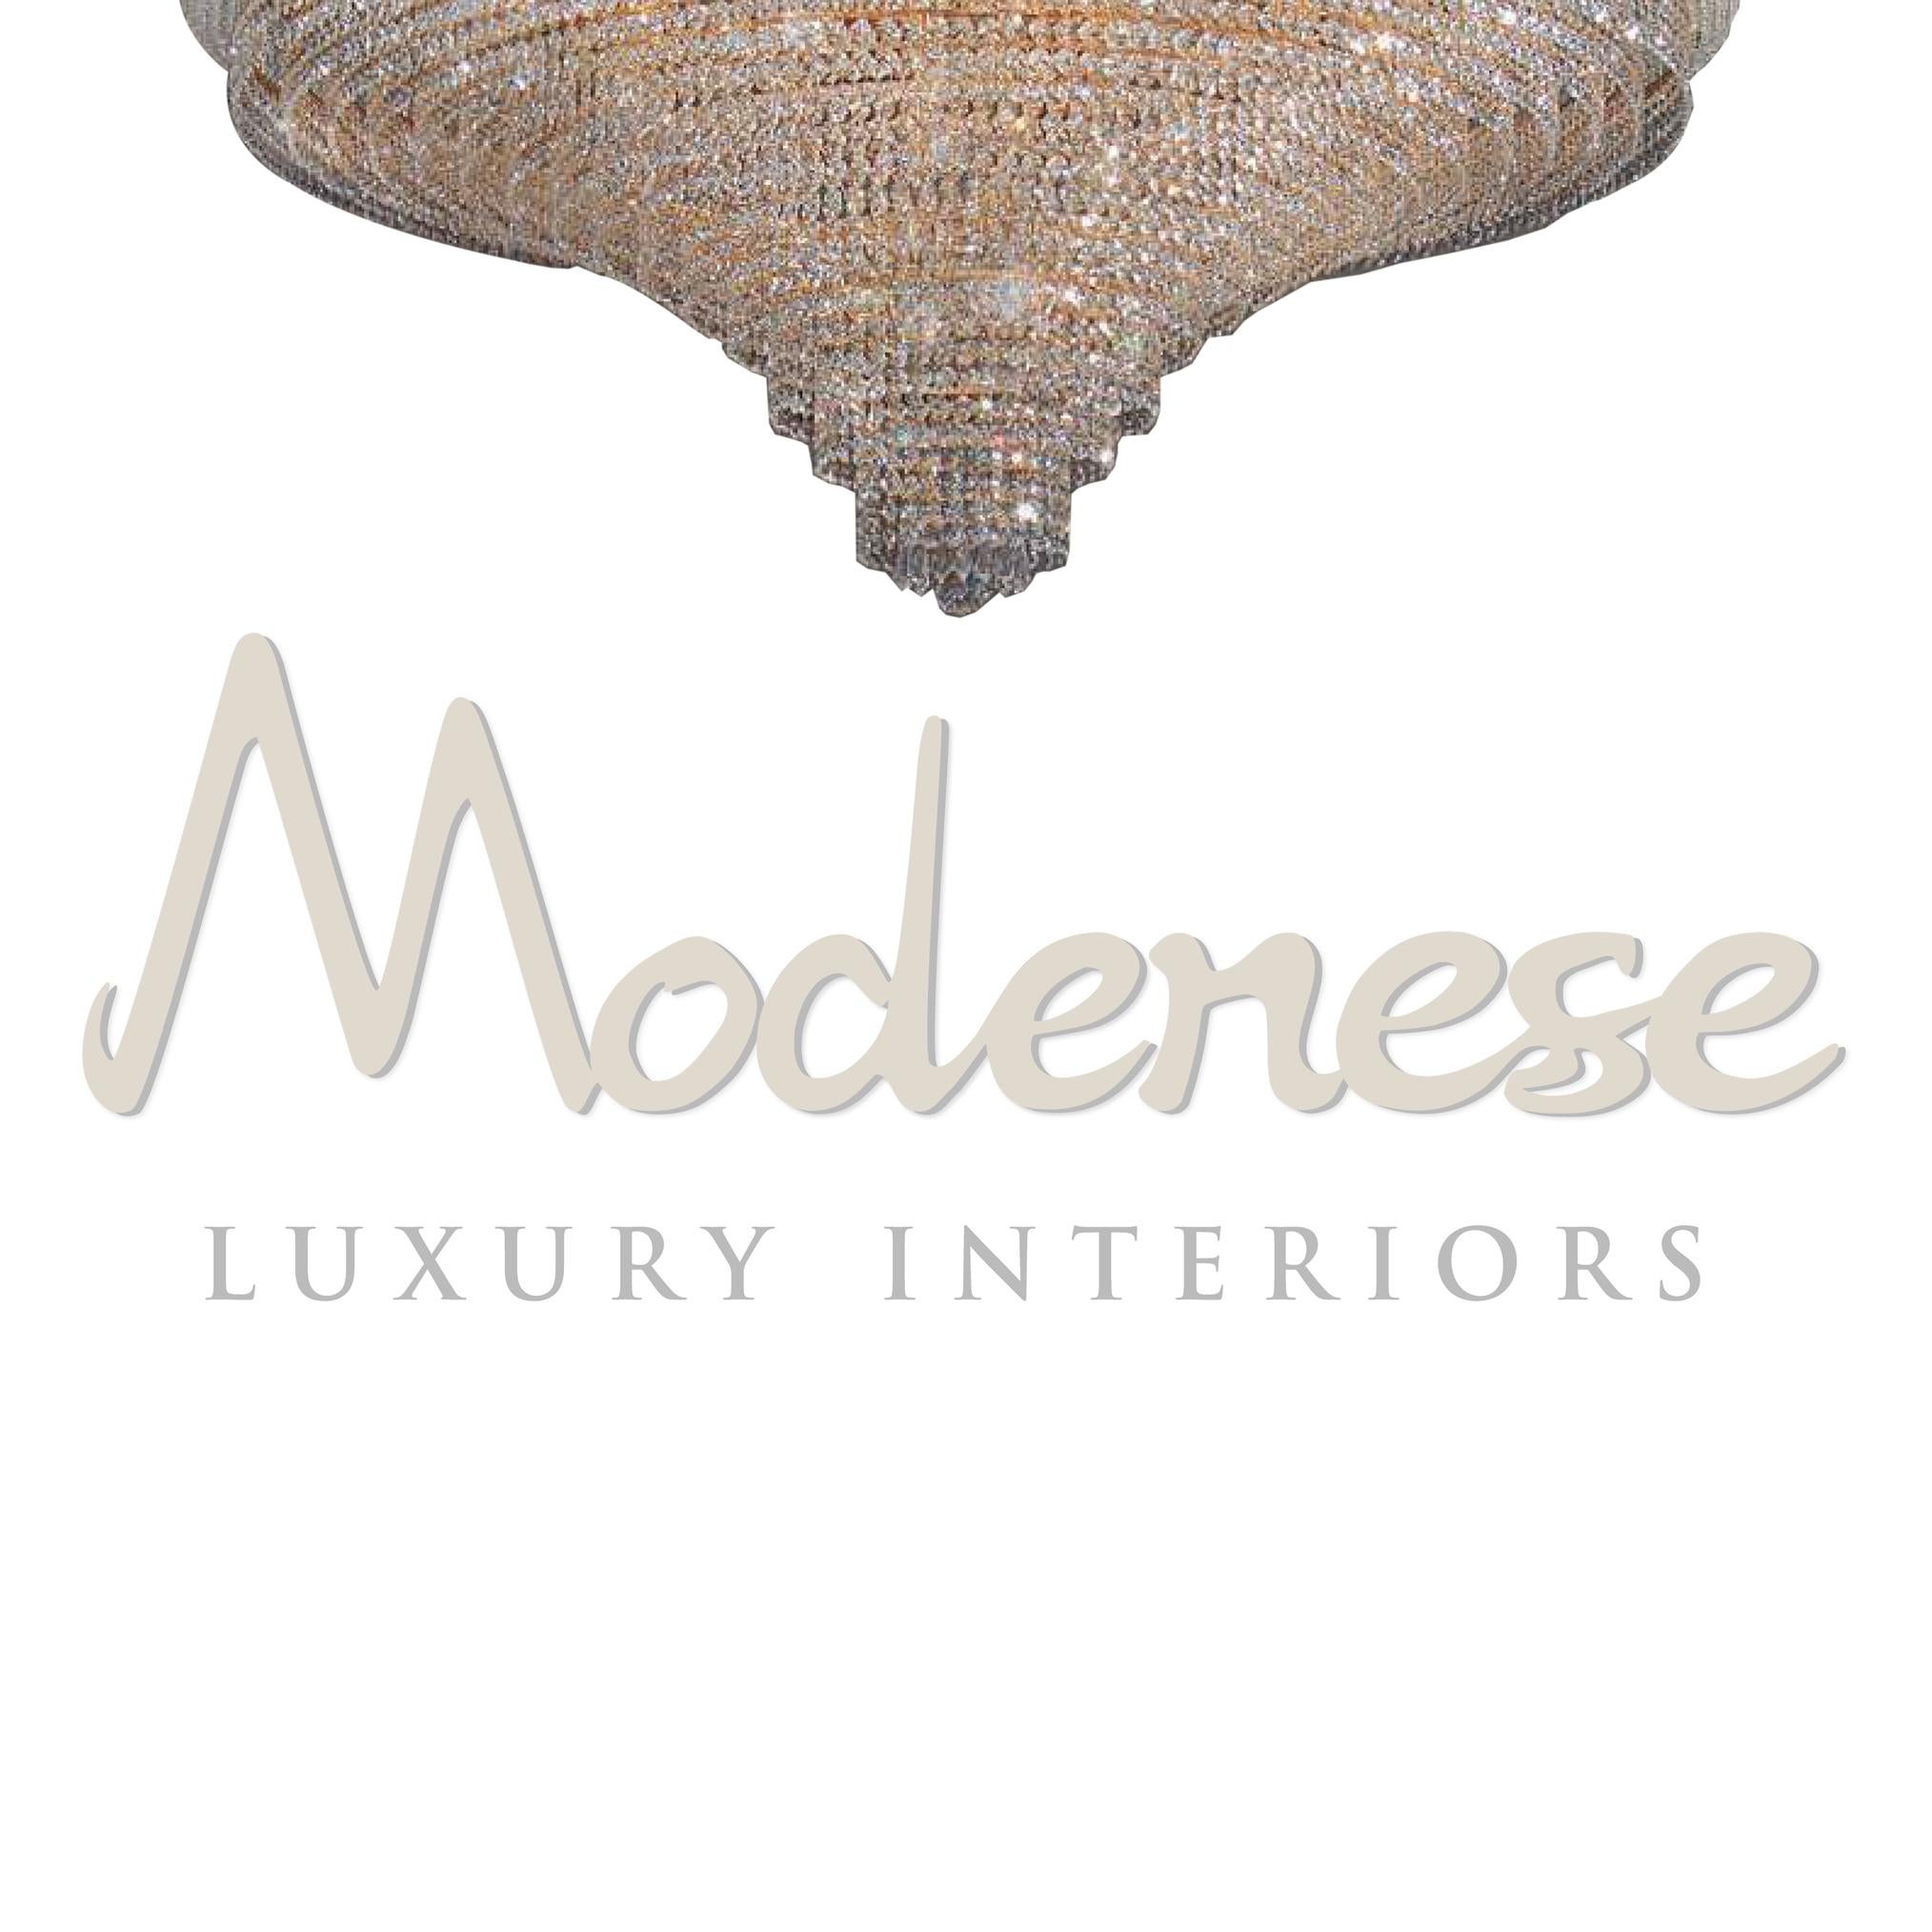 Diese Modenese Gastone Luxury Interiors Deckenleuchte hat eine 24kt vergoldete Oberfläche und ist mit schönen Scholer-Kristallen ausgestattet. Dieses Modell benötigt 18 einzelne E14-Schraubglühbirnen (max. 60Watt).
 